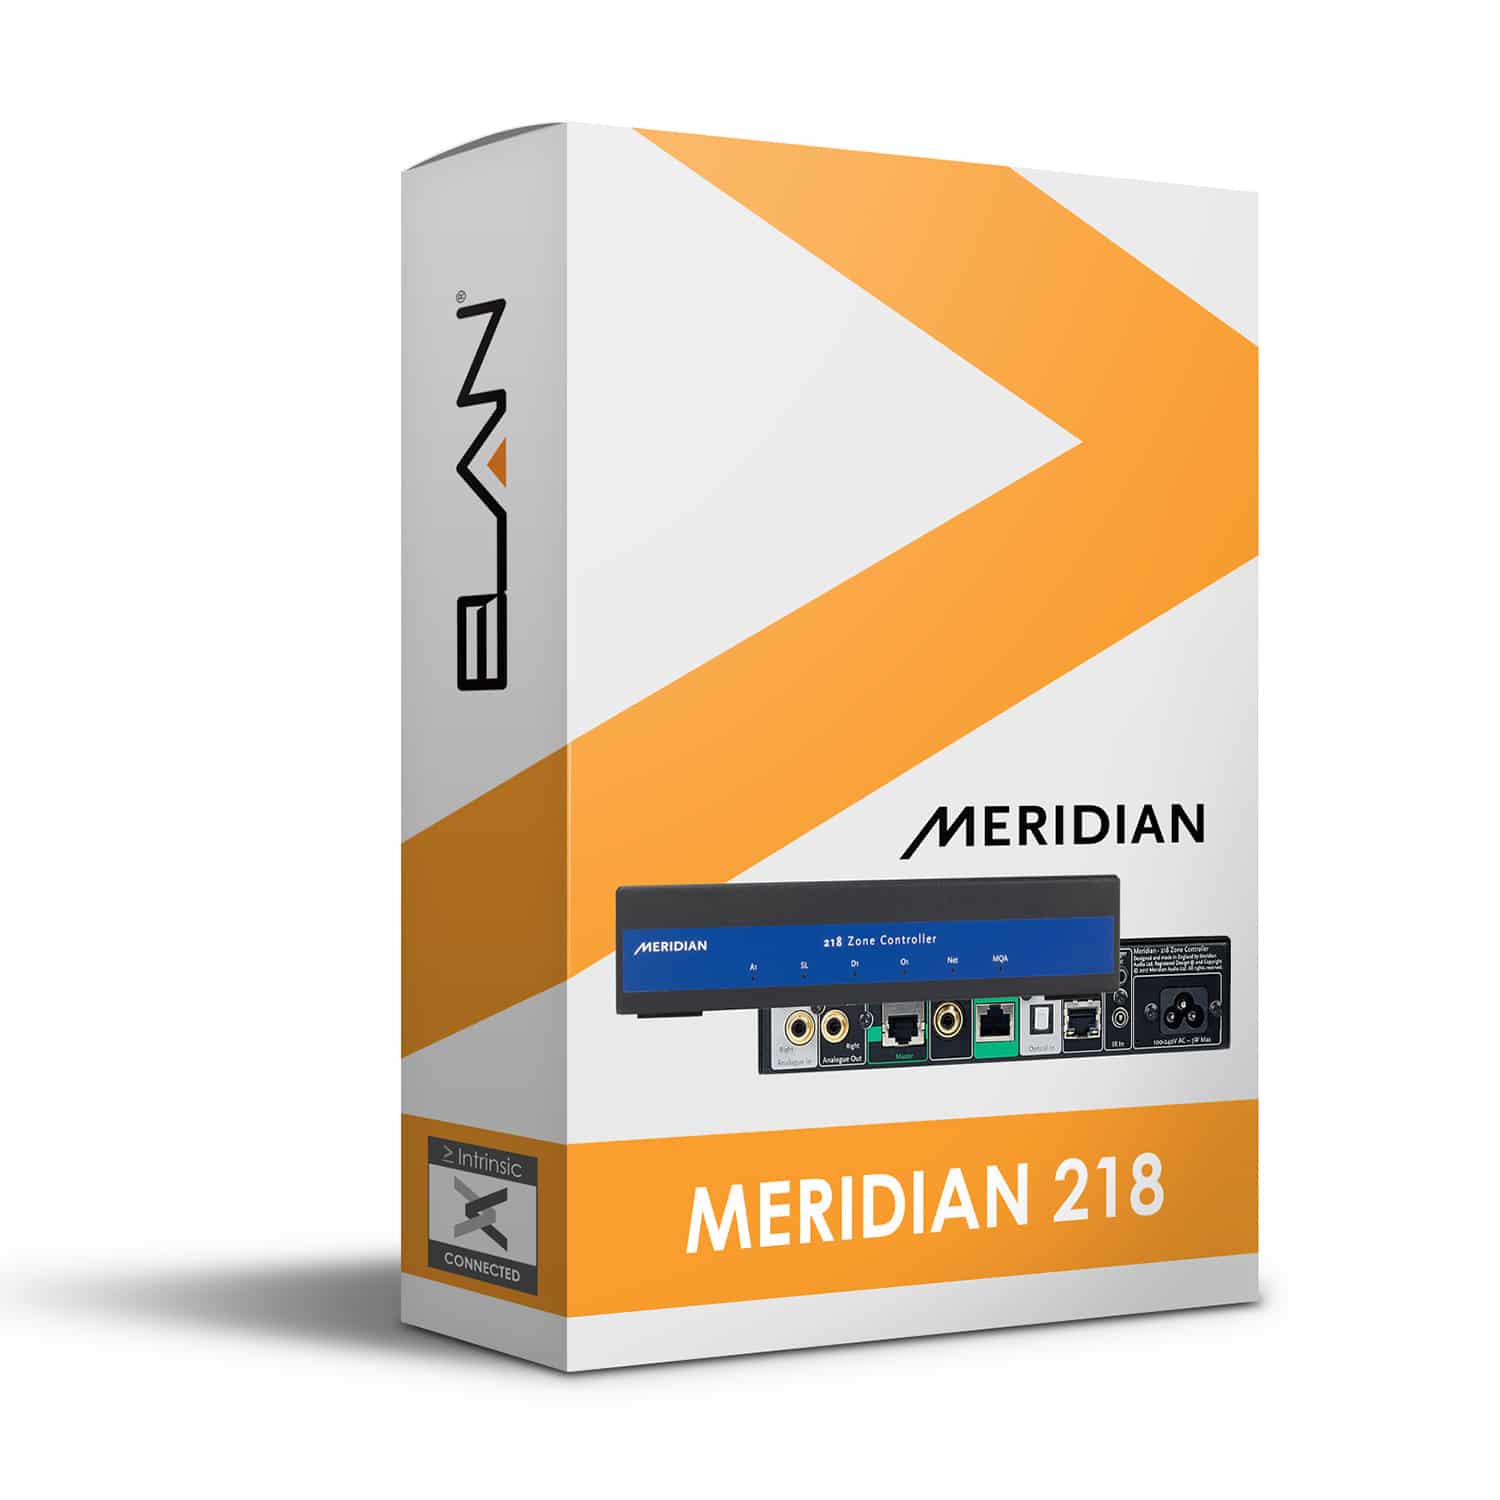 Meridian 218 IP Driver for ELAN